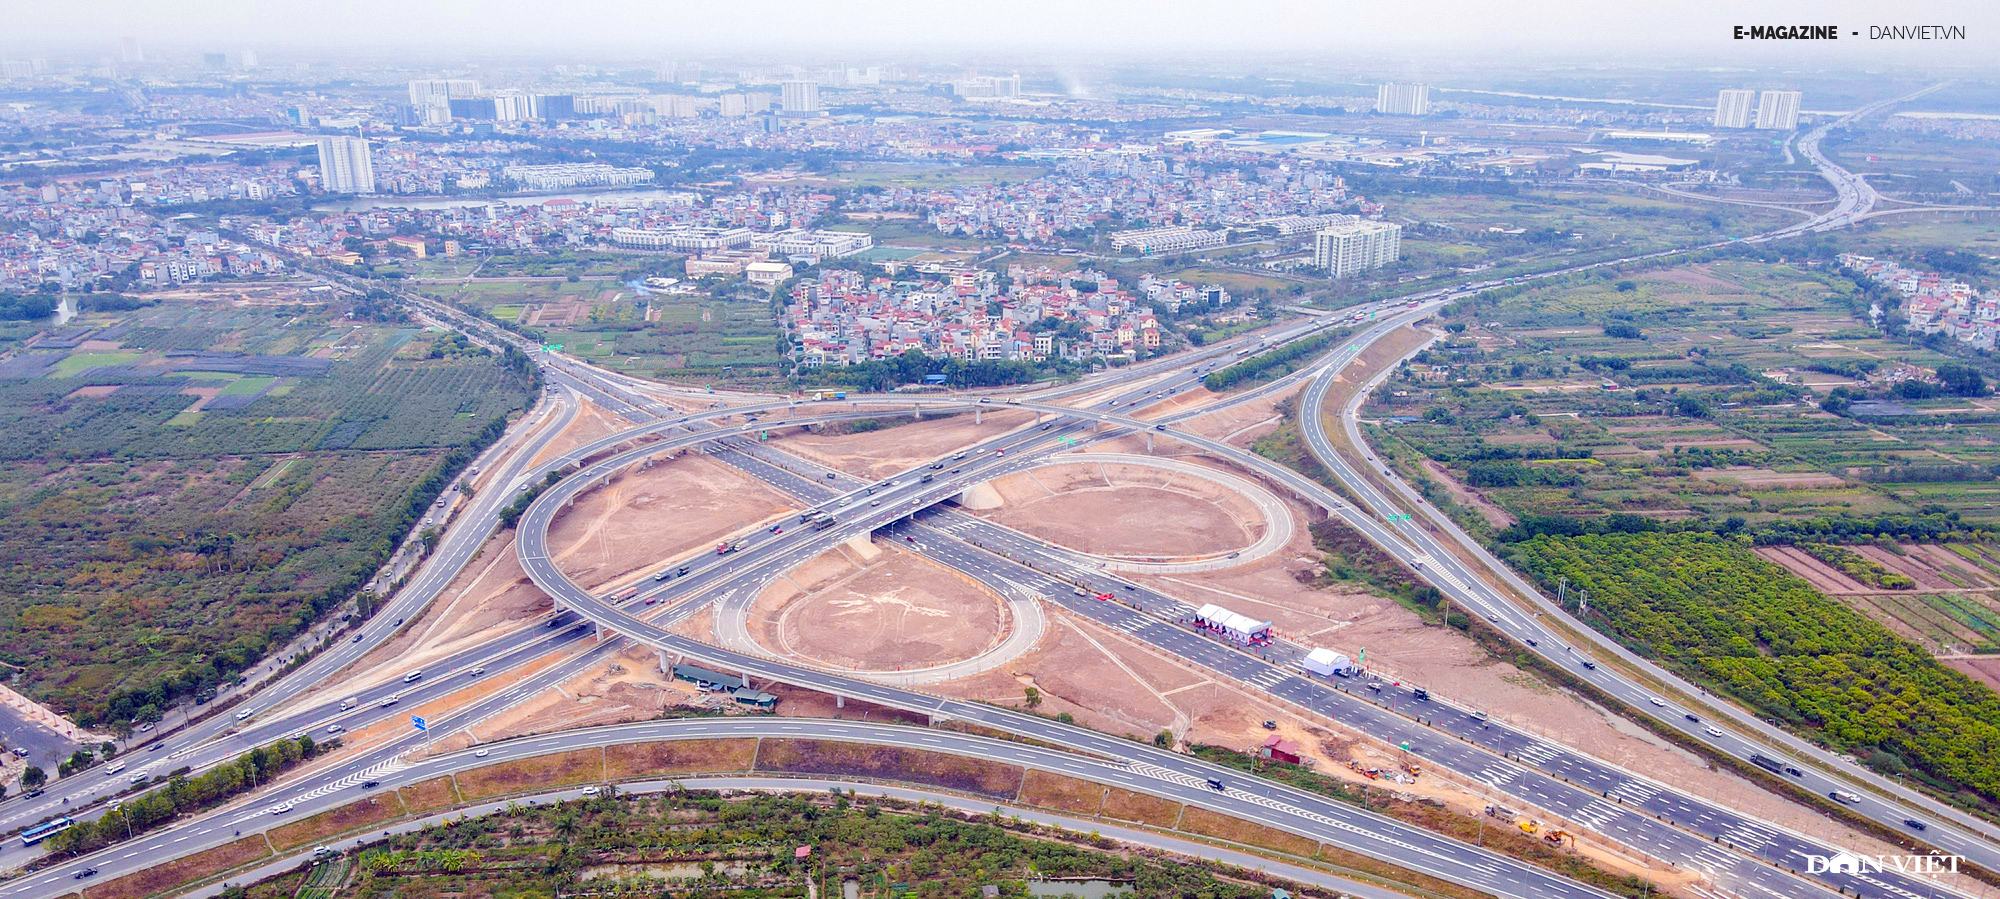 Hà Nội cần khoảng 85.813 tỷ xây đường vành đai 4 vùng Thủ đô - Ảnh 2.